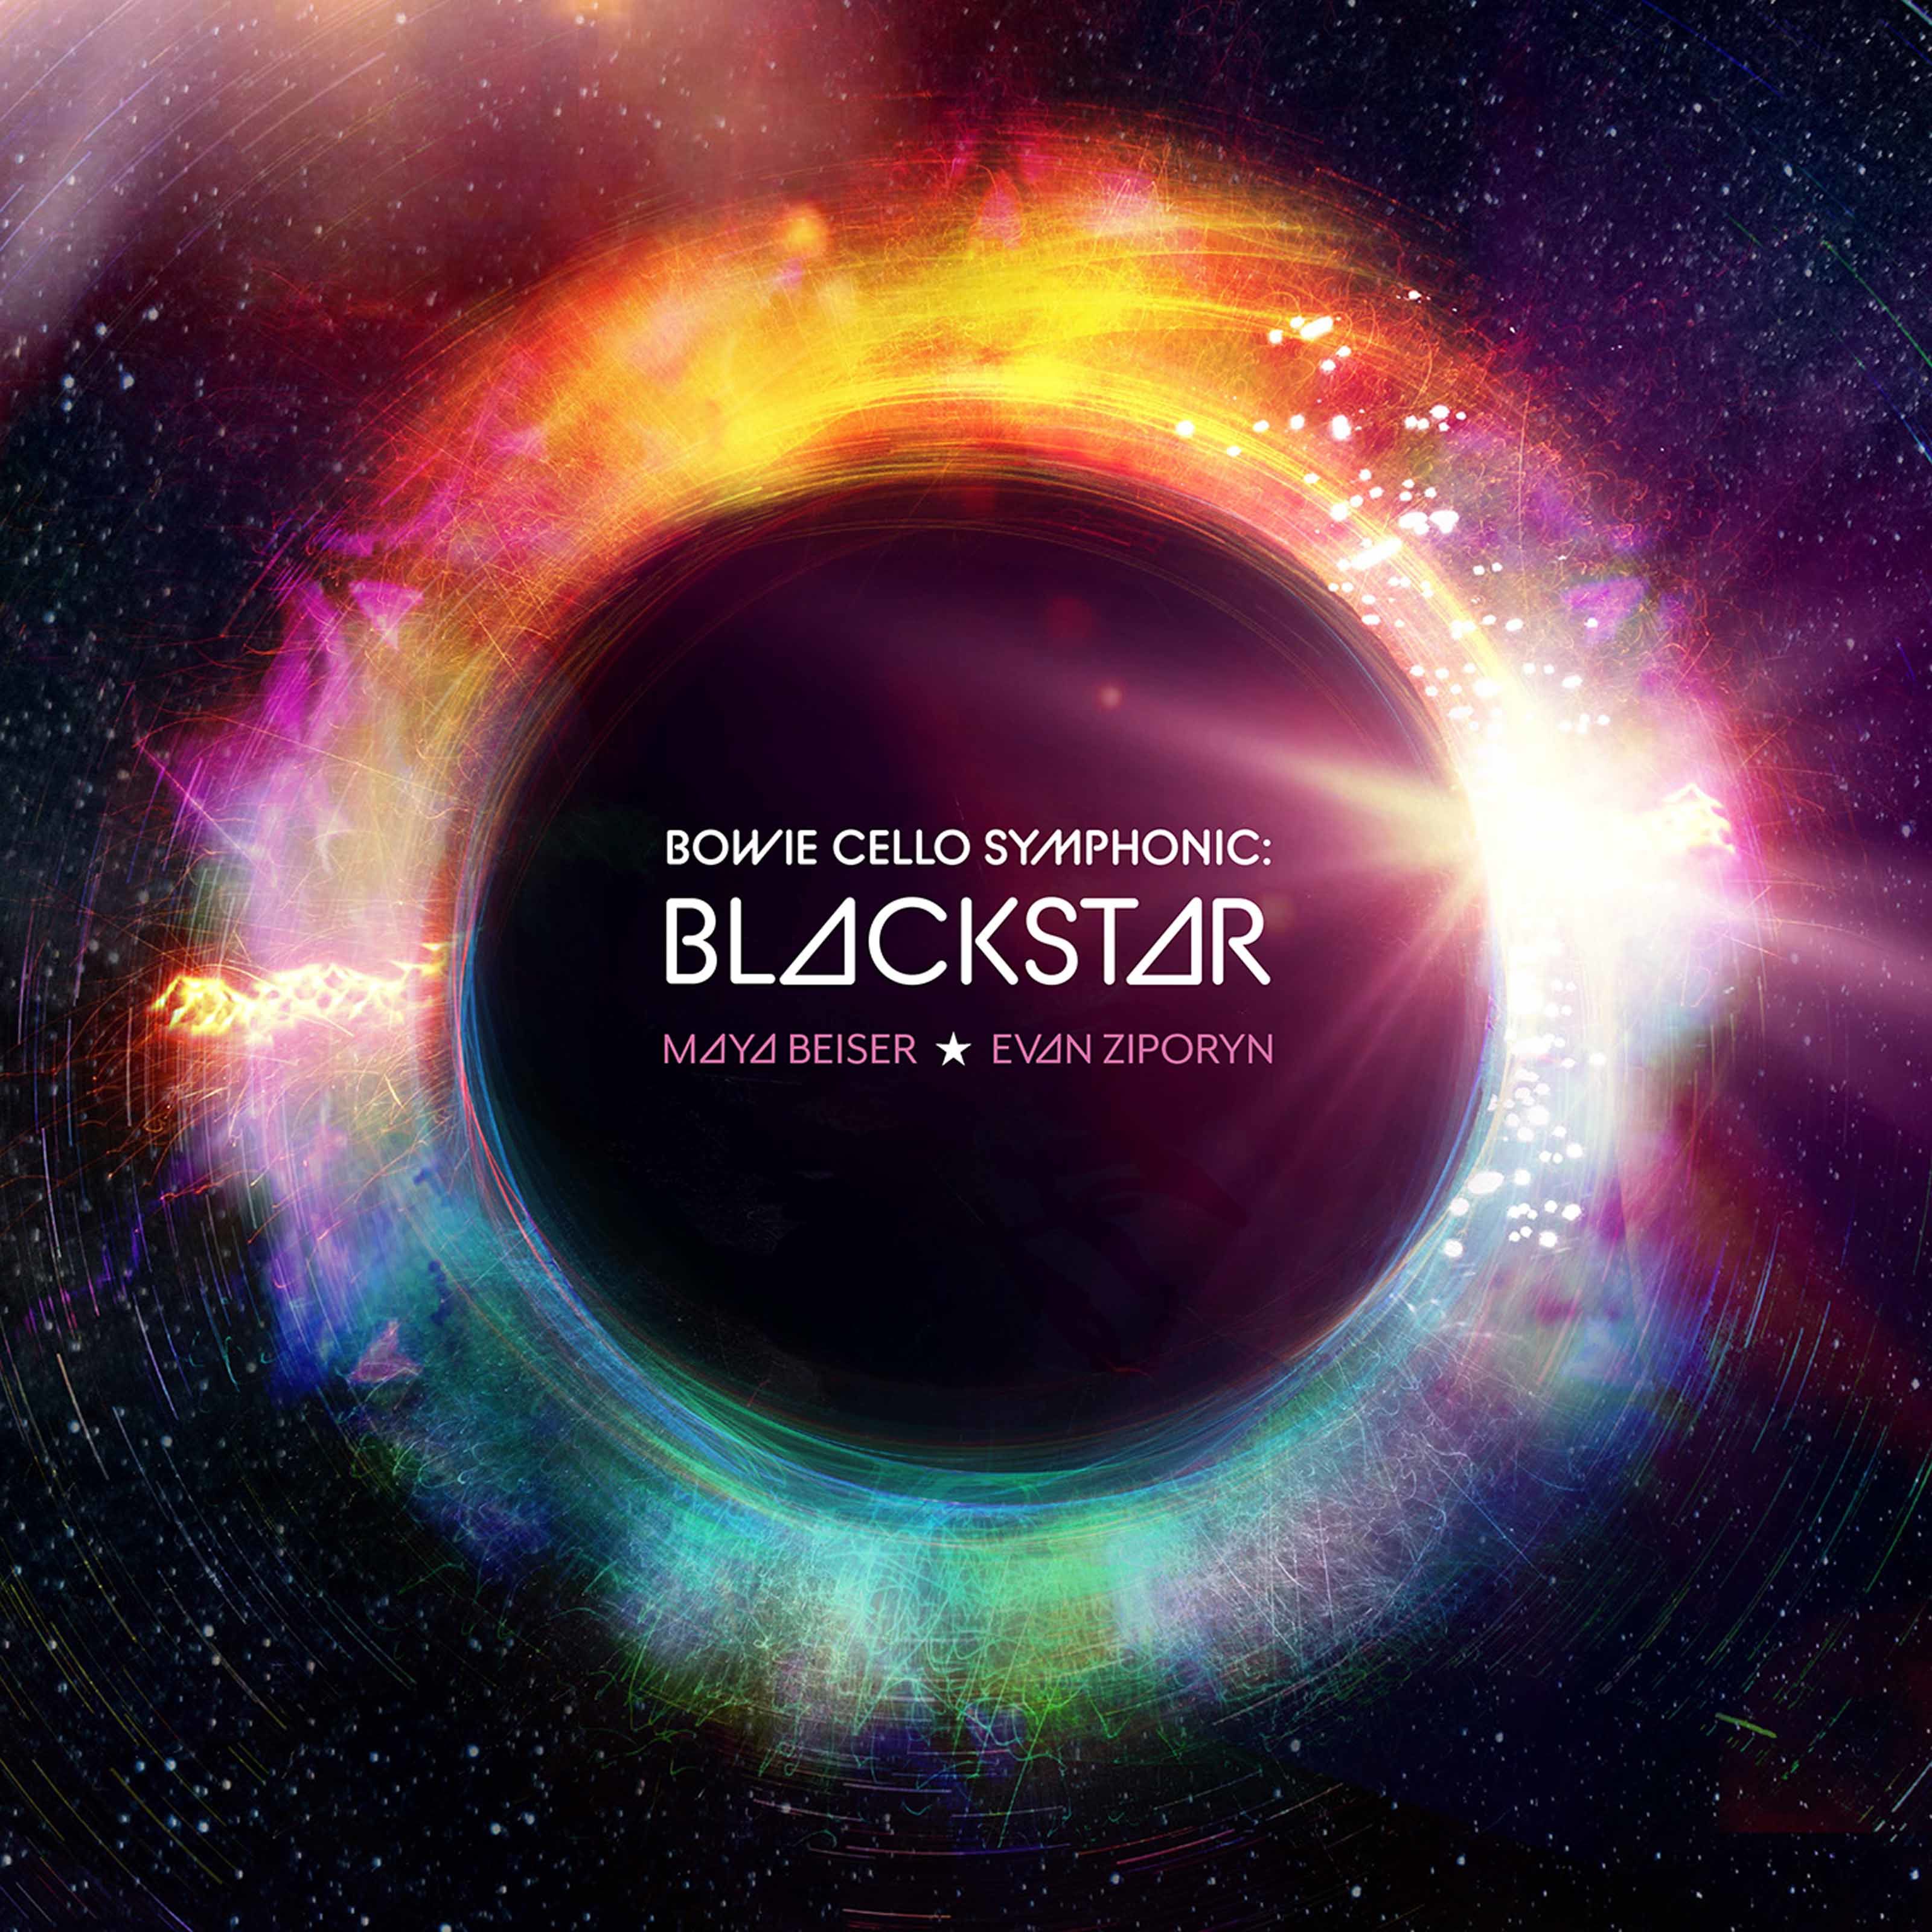 Evan Ziporyn, Ambient Orchestra, Maya Beiser – Bowie Cello Symphonic: Blackstar (2020) [FLAC 24bit/48kHz]